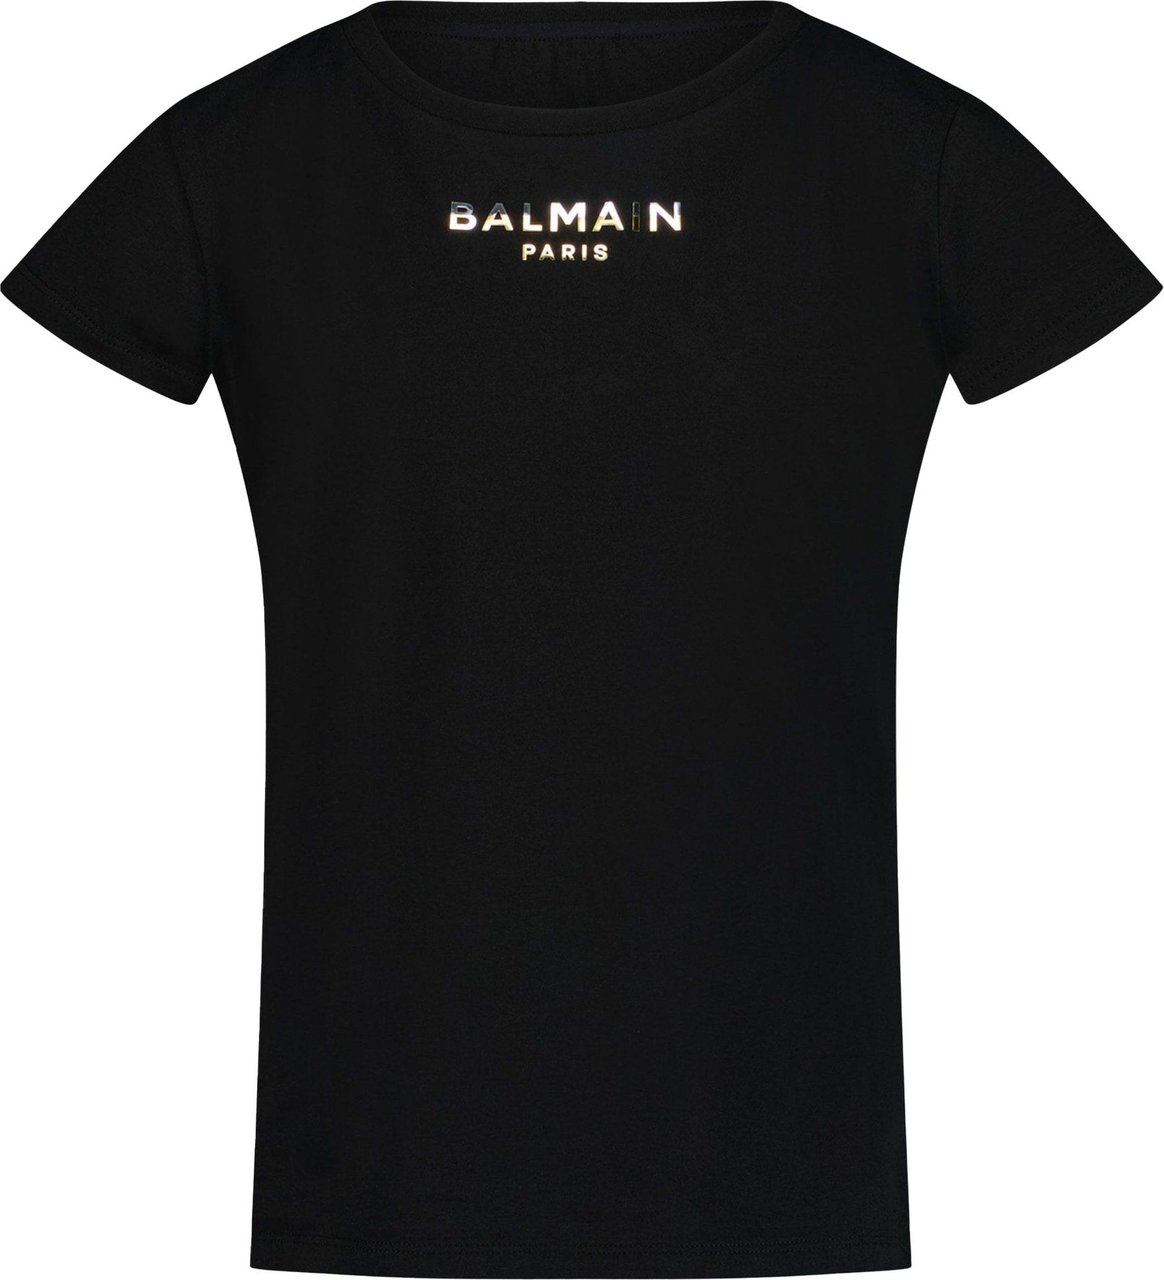 Balmain Balmain Kinder Meisjes T-Shirt Zwart Zwart